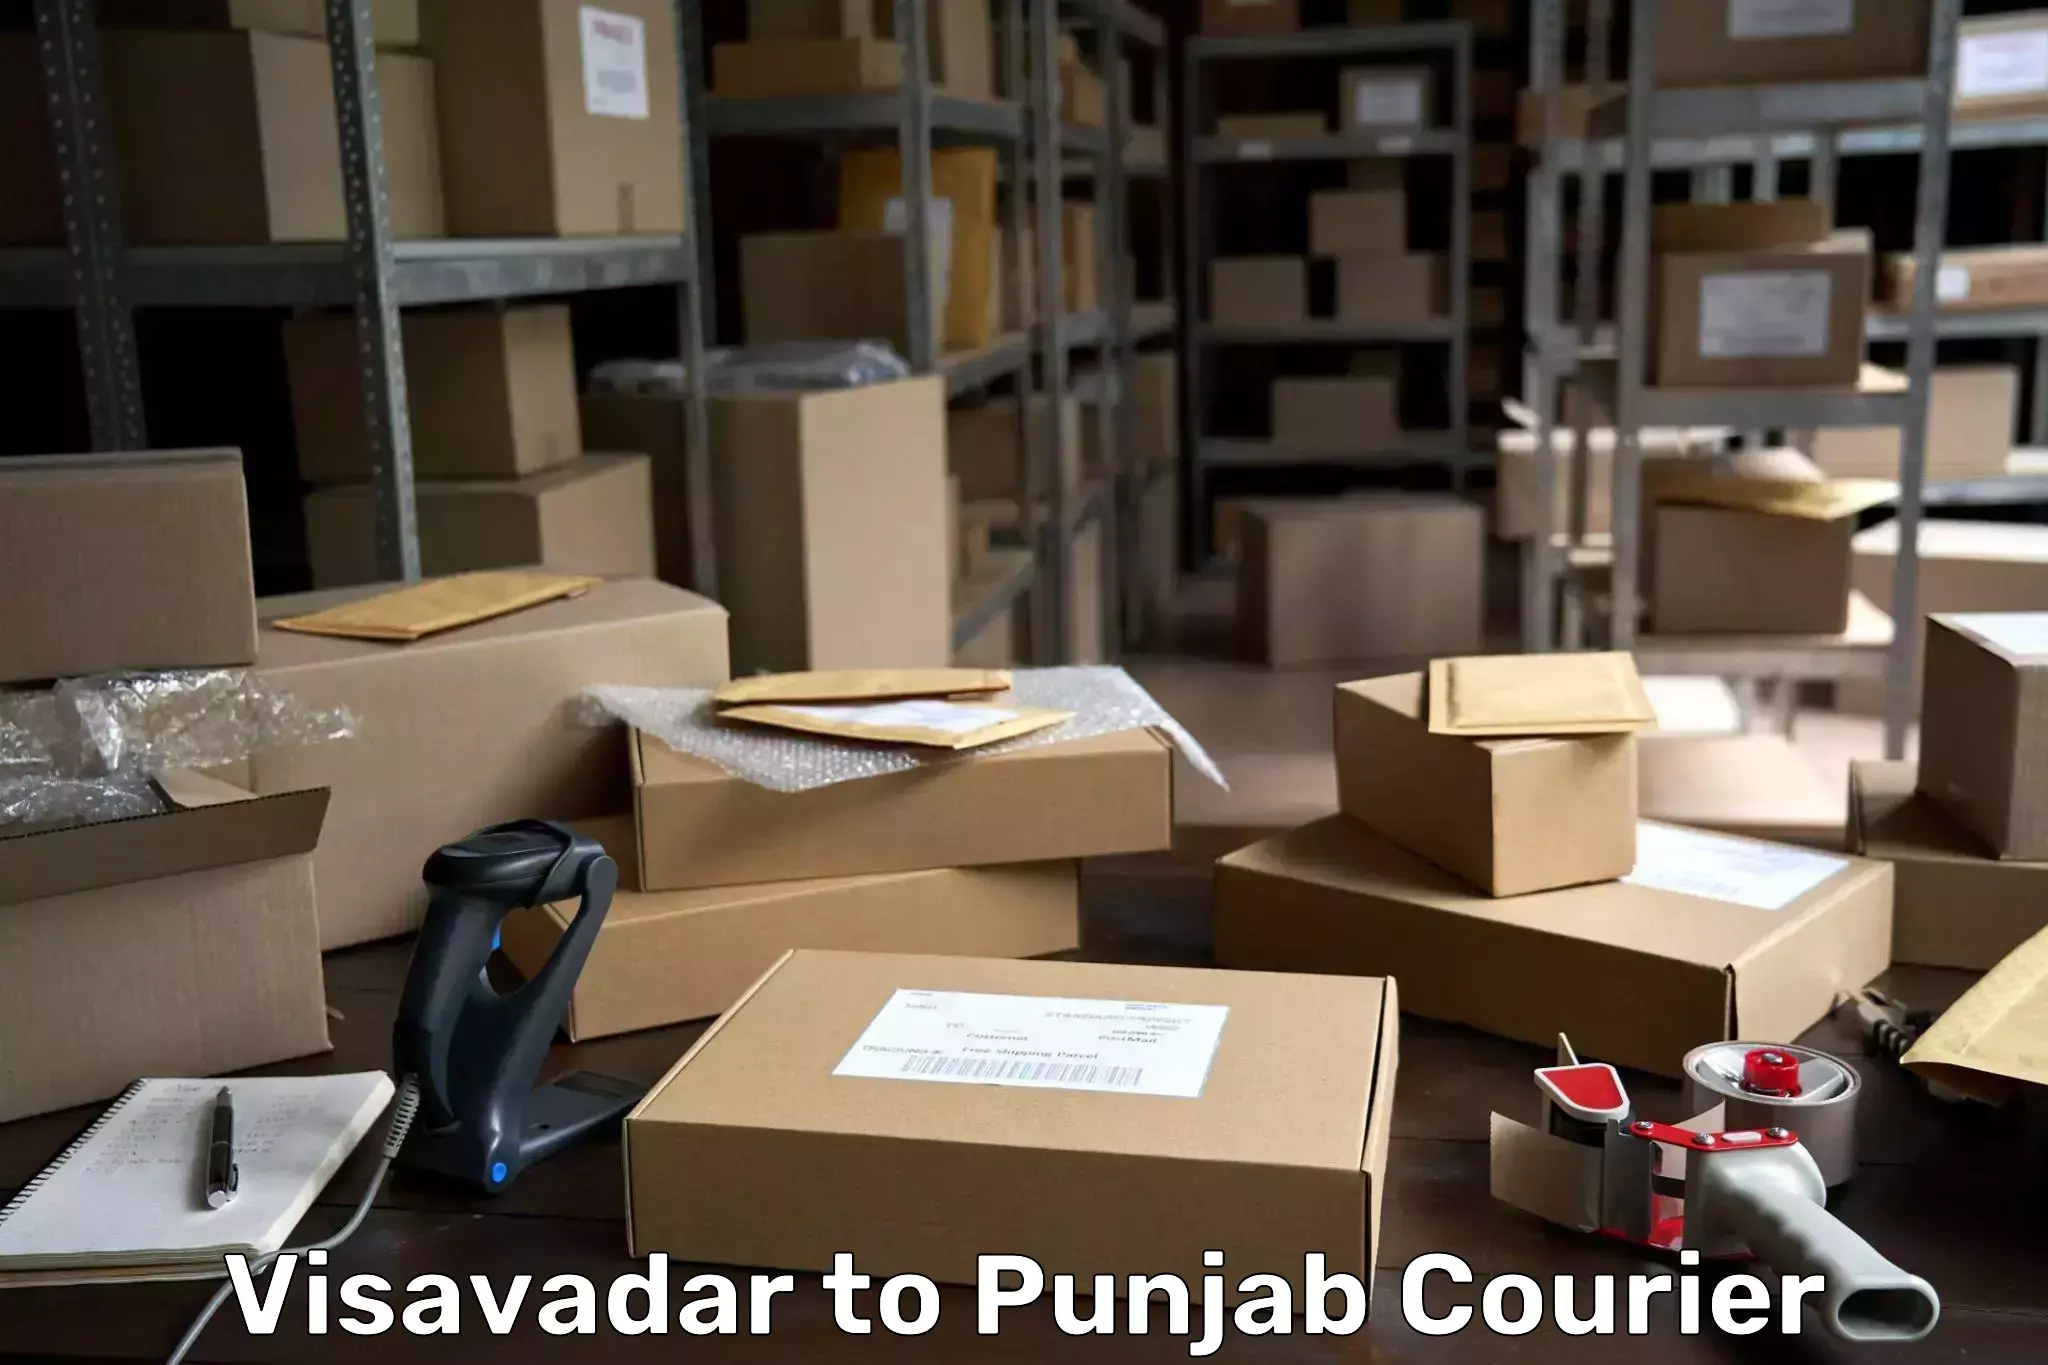 Global courier networks Visavadar to Punjab